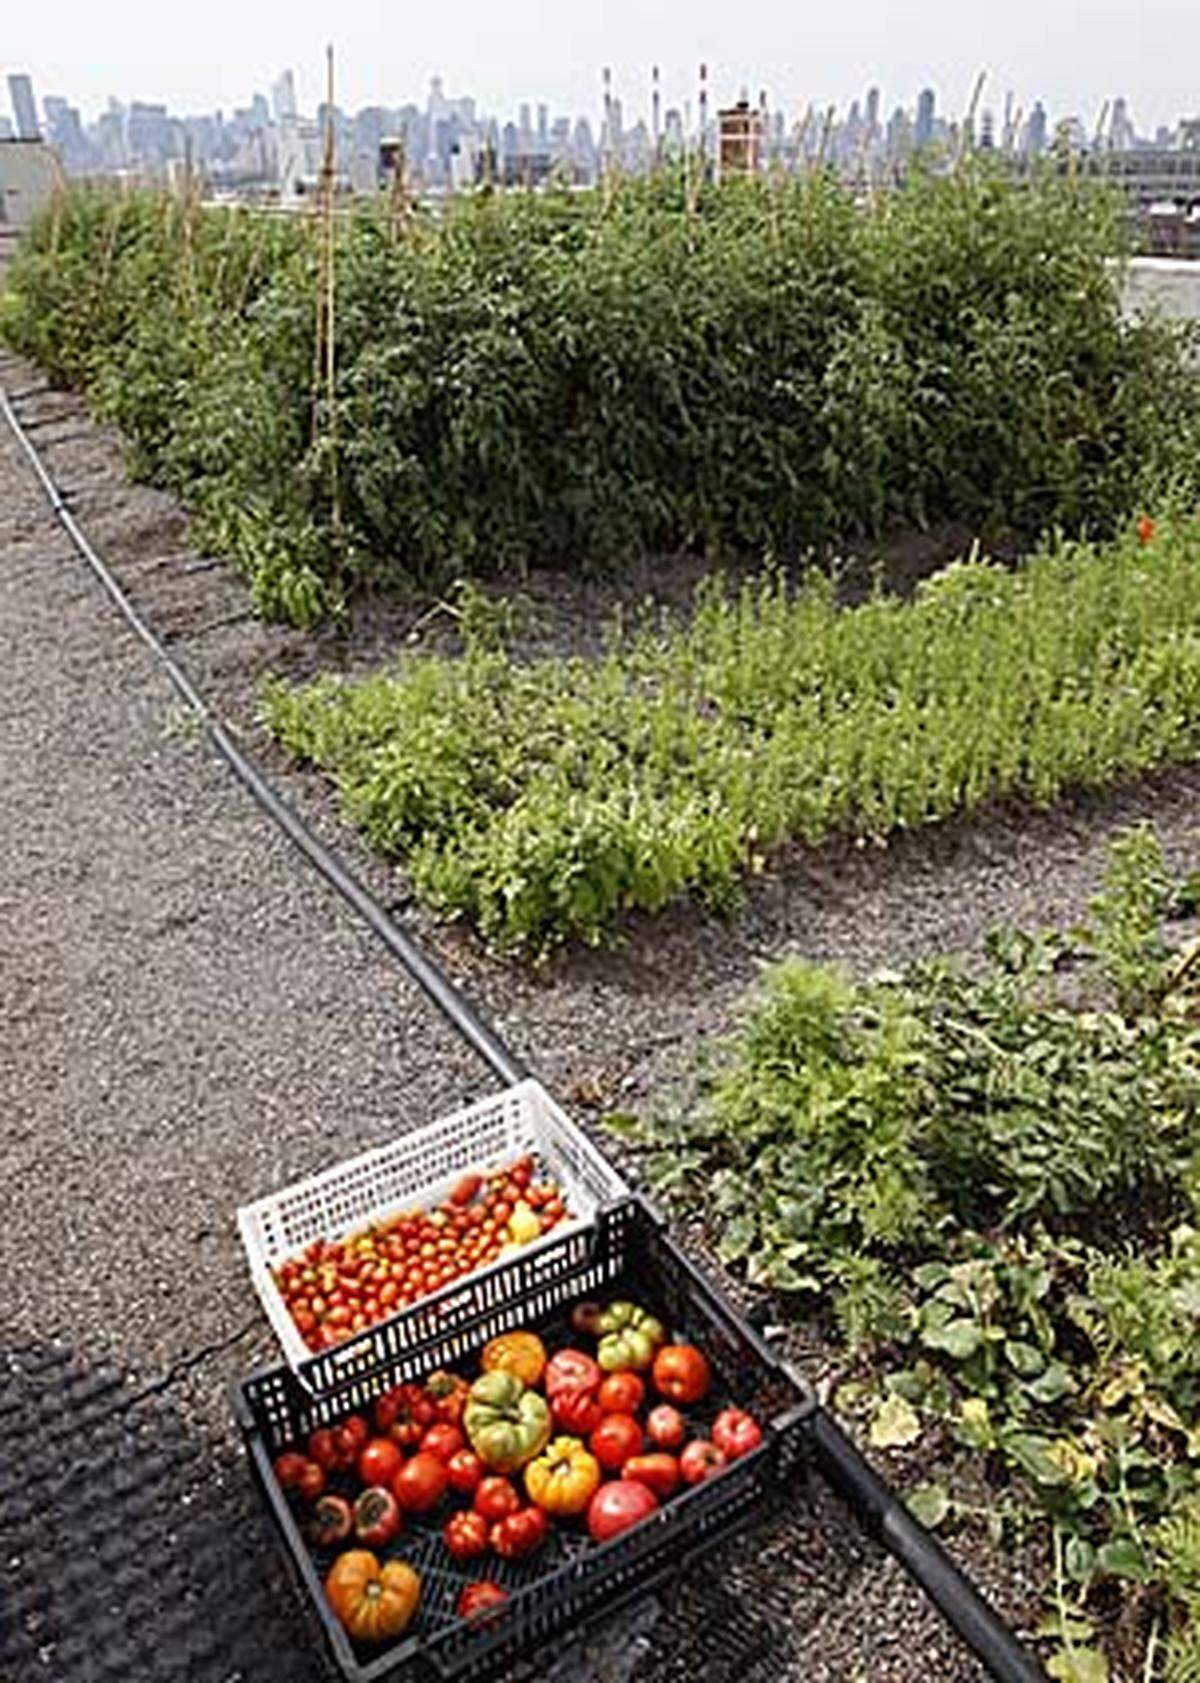 Die 4000 Quadratmeter große Farm hat nach eigenen Angaben hunderttausende Pflanzen angebaut, vor allem Tomaten (40 Sorten), Salate, Kräuter, Bohnen, Karotten und anderes Gemüse.